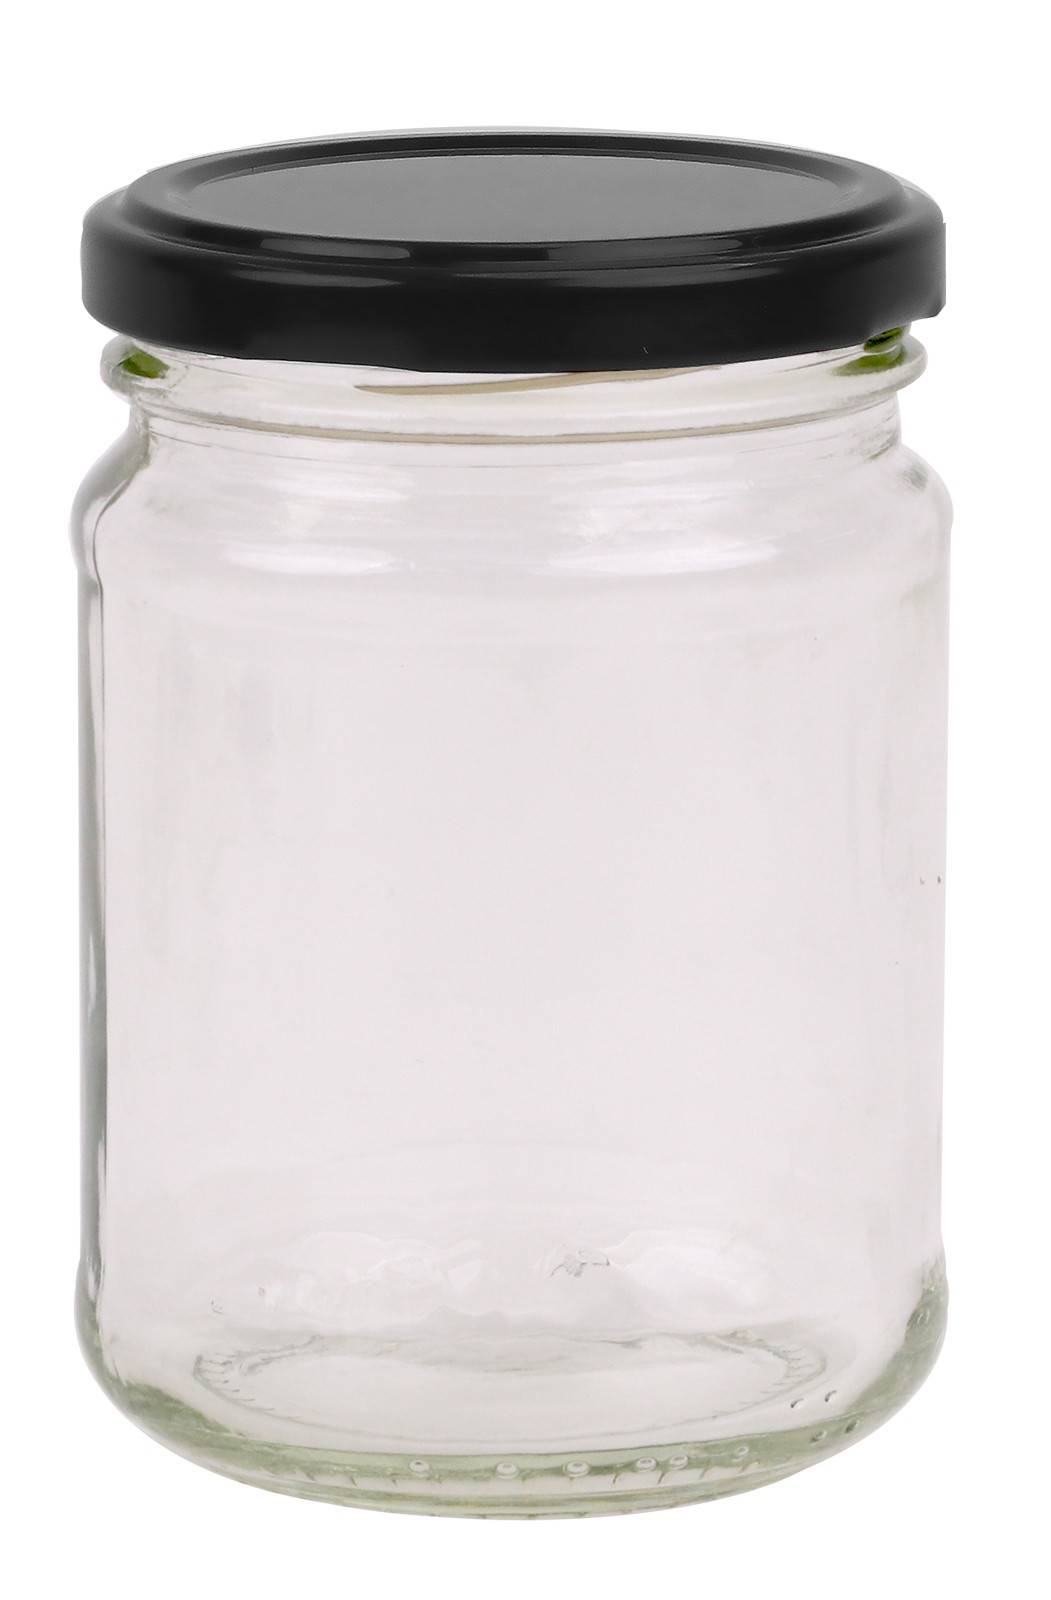 Round Glass Jar - 250ml / 350gm size - with Black Lid